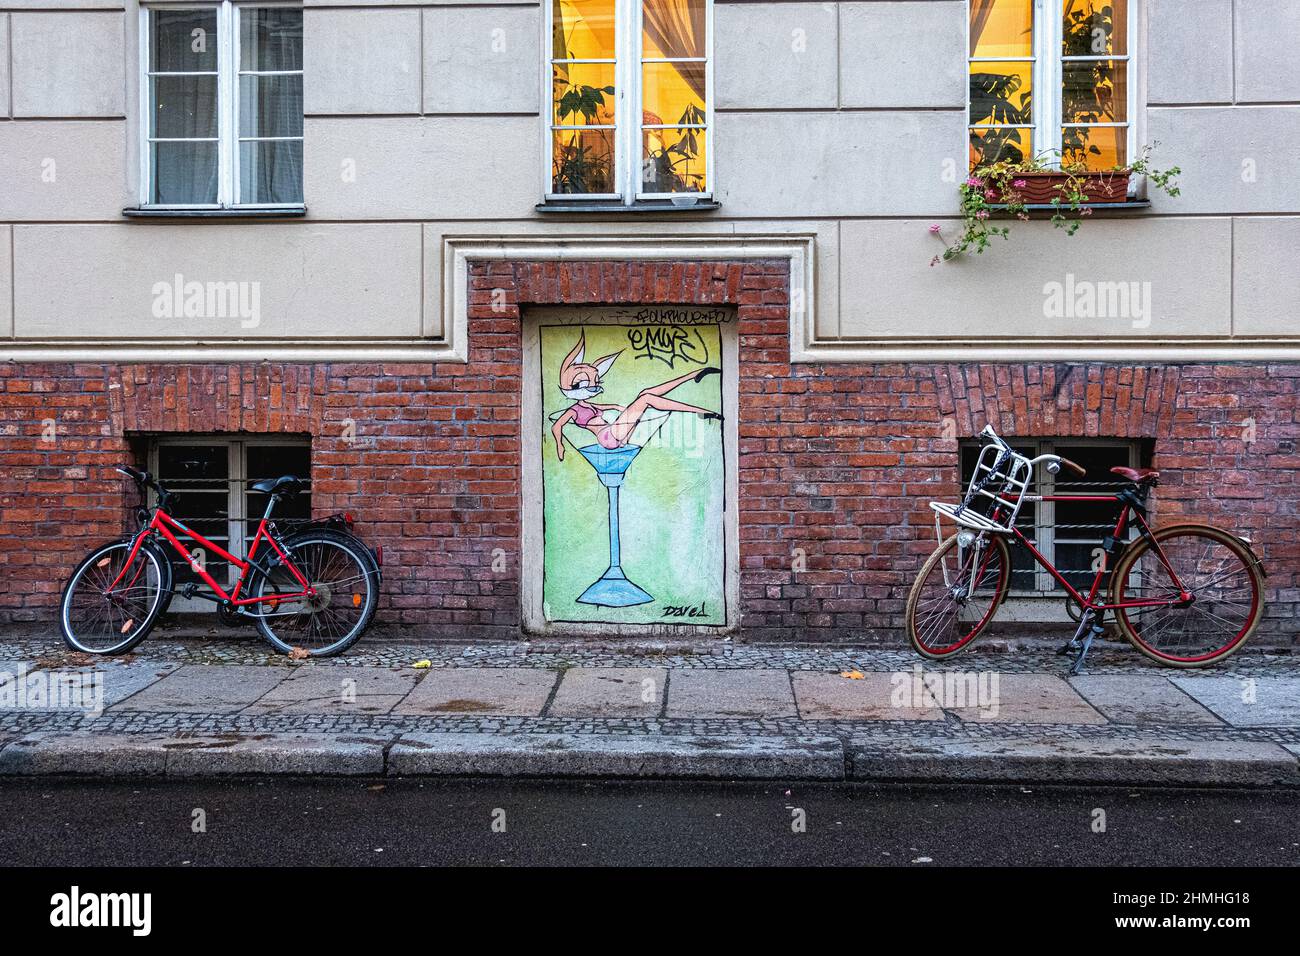 Blick auf die Mulackstrasse, Mitte, Berlin. Appartementgebäude, geparkte Fahrräder, gepflasterter Bürgersteig und gewagte Street Art Paste-up Stockfoto